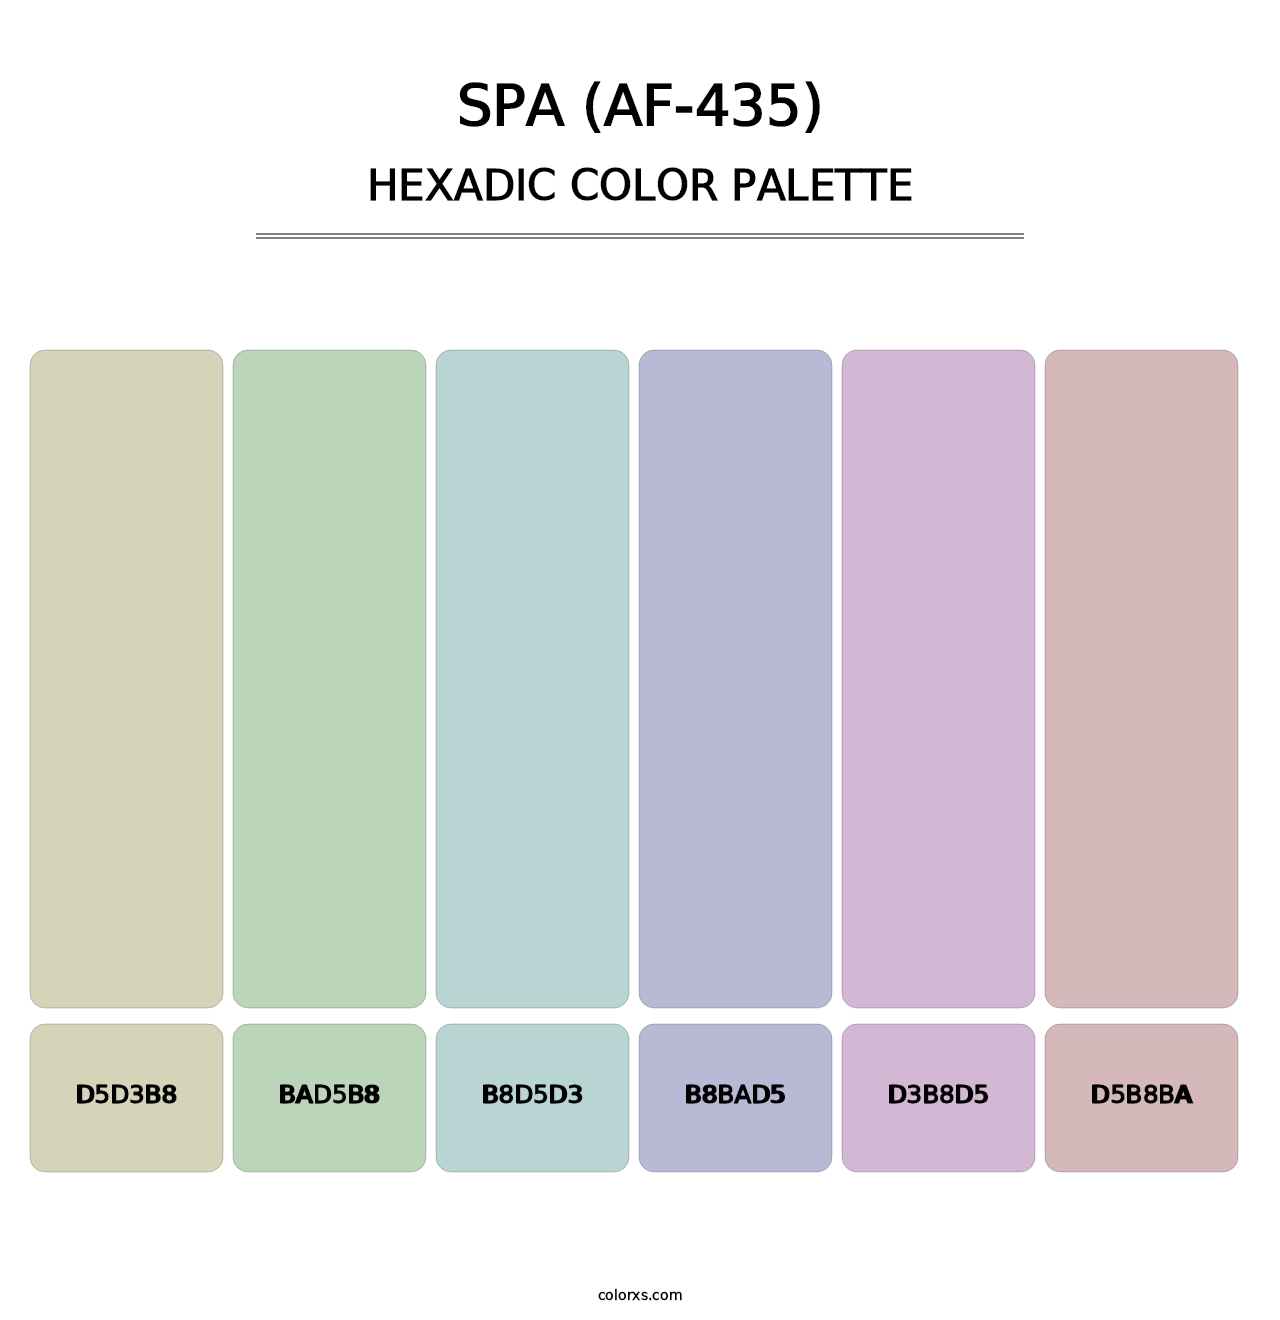 Spa (AF-435) - Hexadic Color Palette